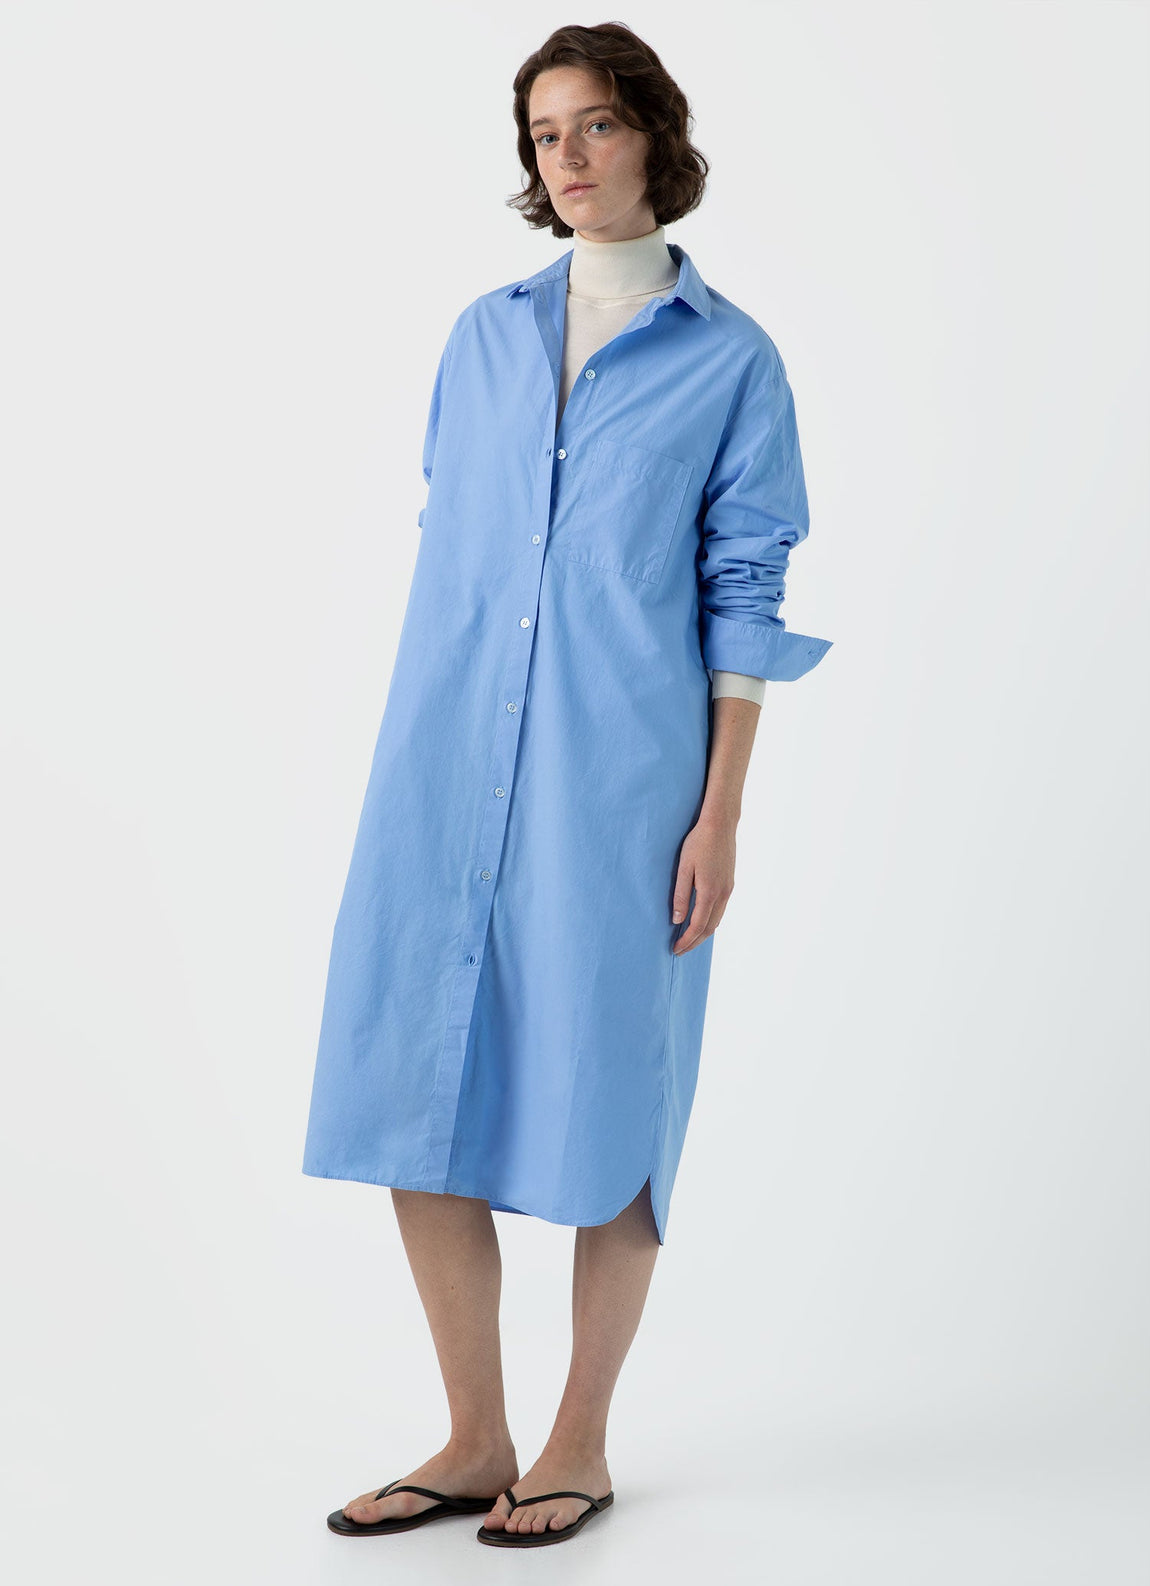 Women's Cotton Poplin Shirt Dress in Mid Blue